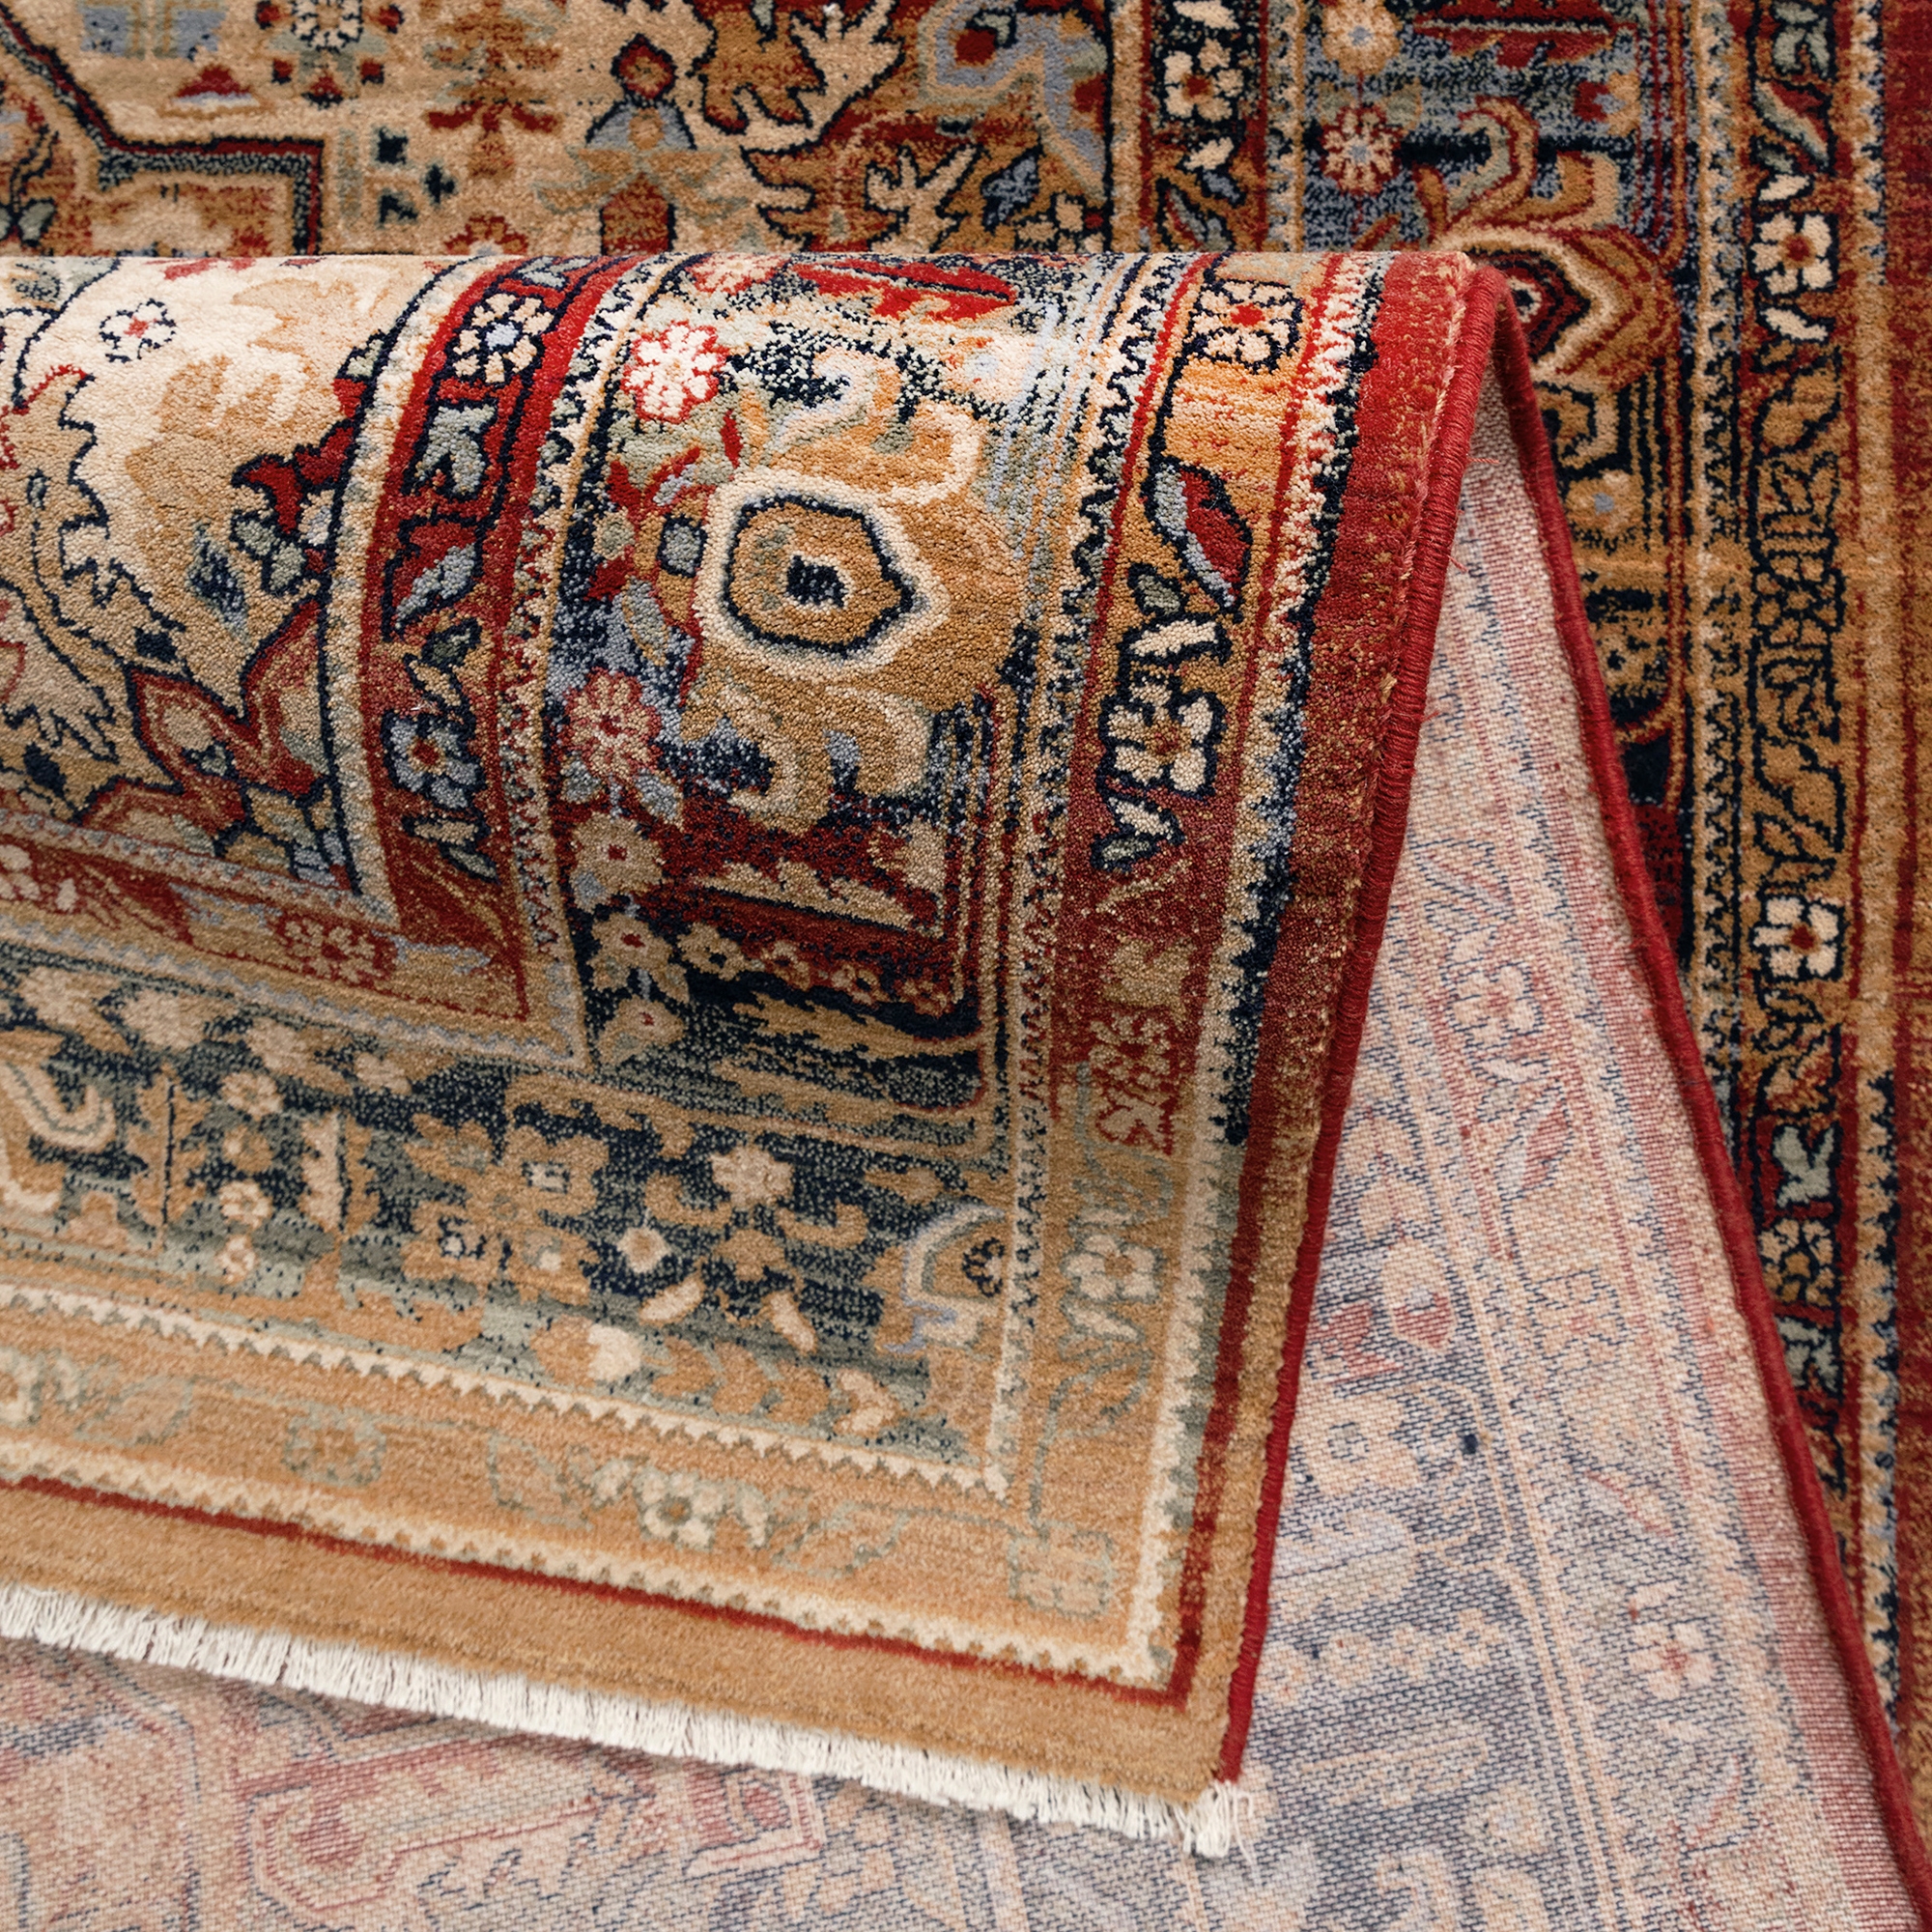 Covor living / dormitor Carpeta Antique 75181-53528, 60 x 85 cm, lana, bej + maro + rosu + bleumarin, dreptunghiular